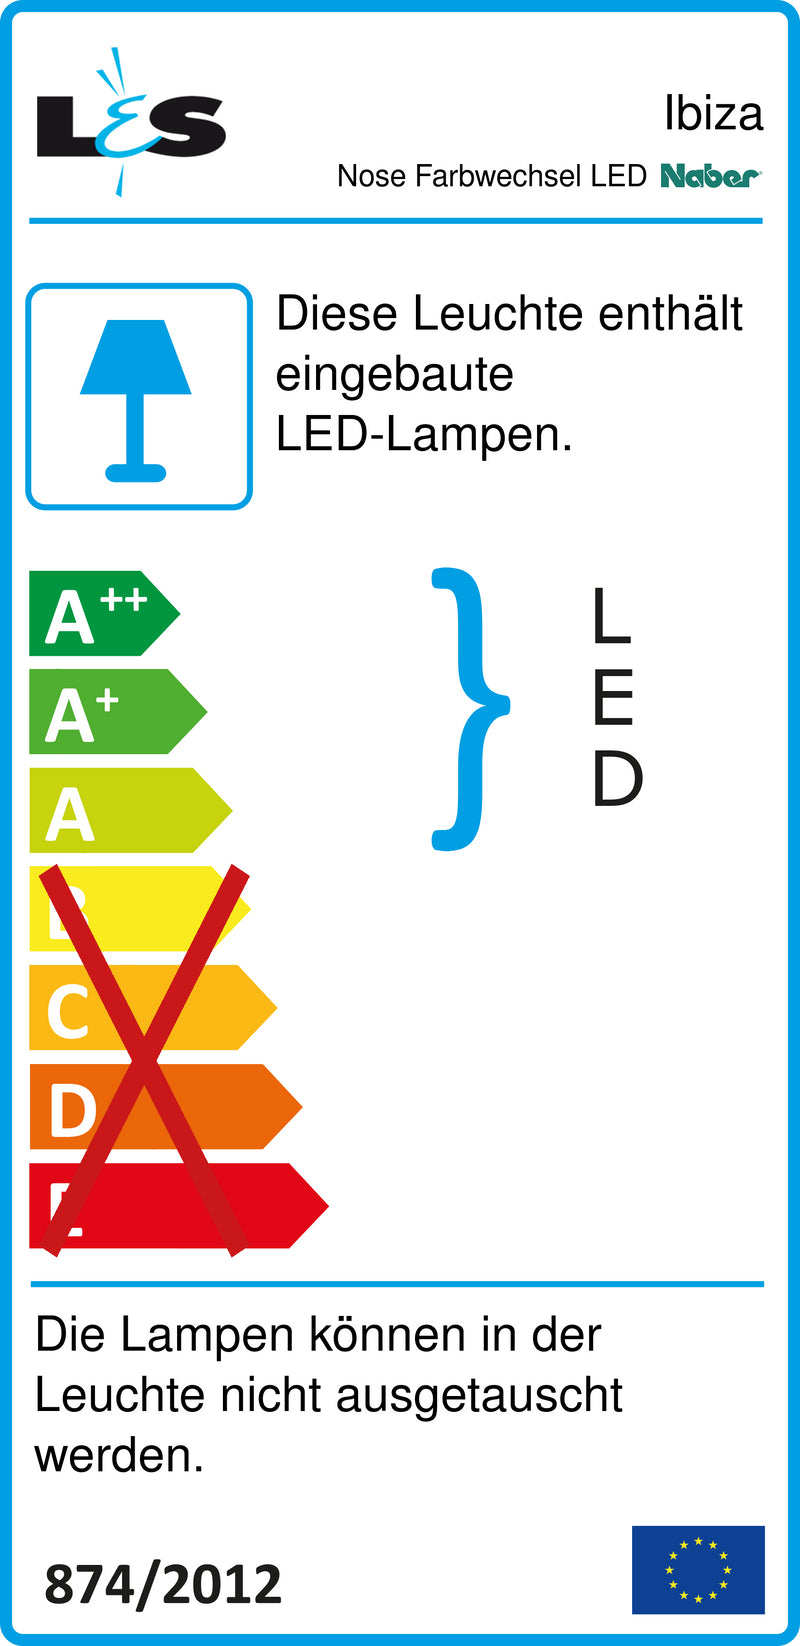 E-Label zu Zeichnung zu Nose Farbwechsel LED als Variante Einzelleuchte m. LED Touch S. D., edelstahlfarbig von Naber GmbH in der Kategorie Lichttechnik in Österreich auf conceptshop.at